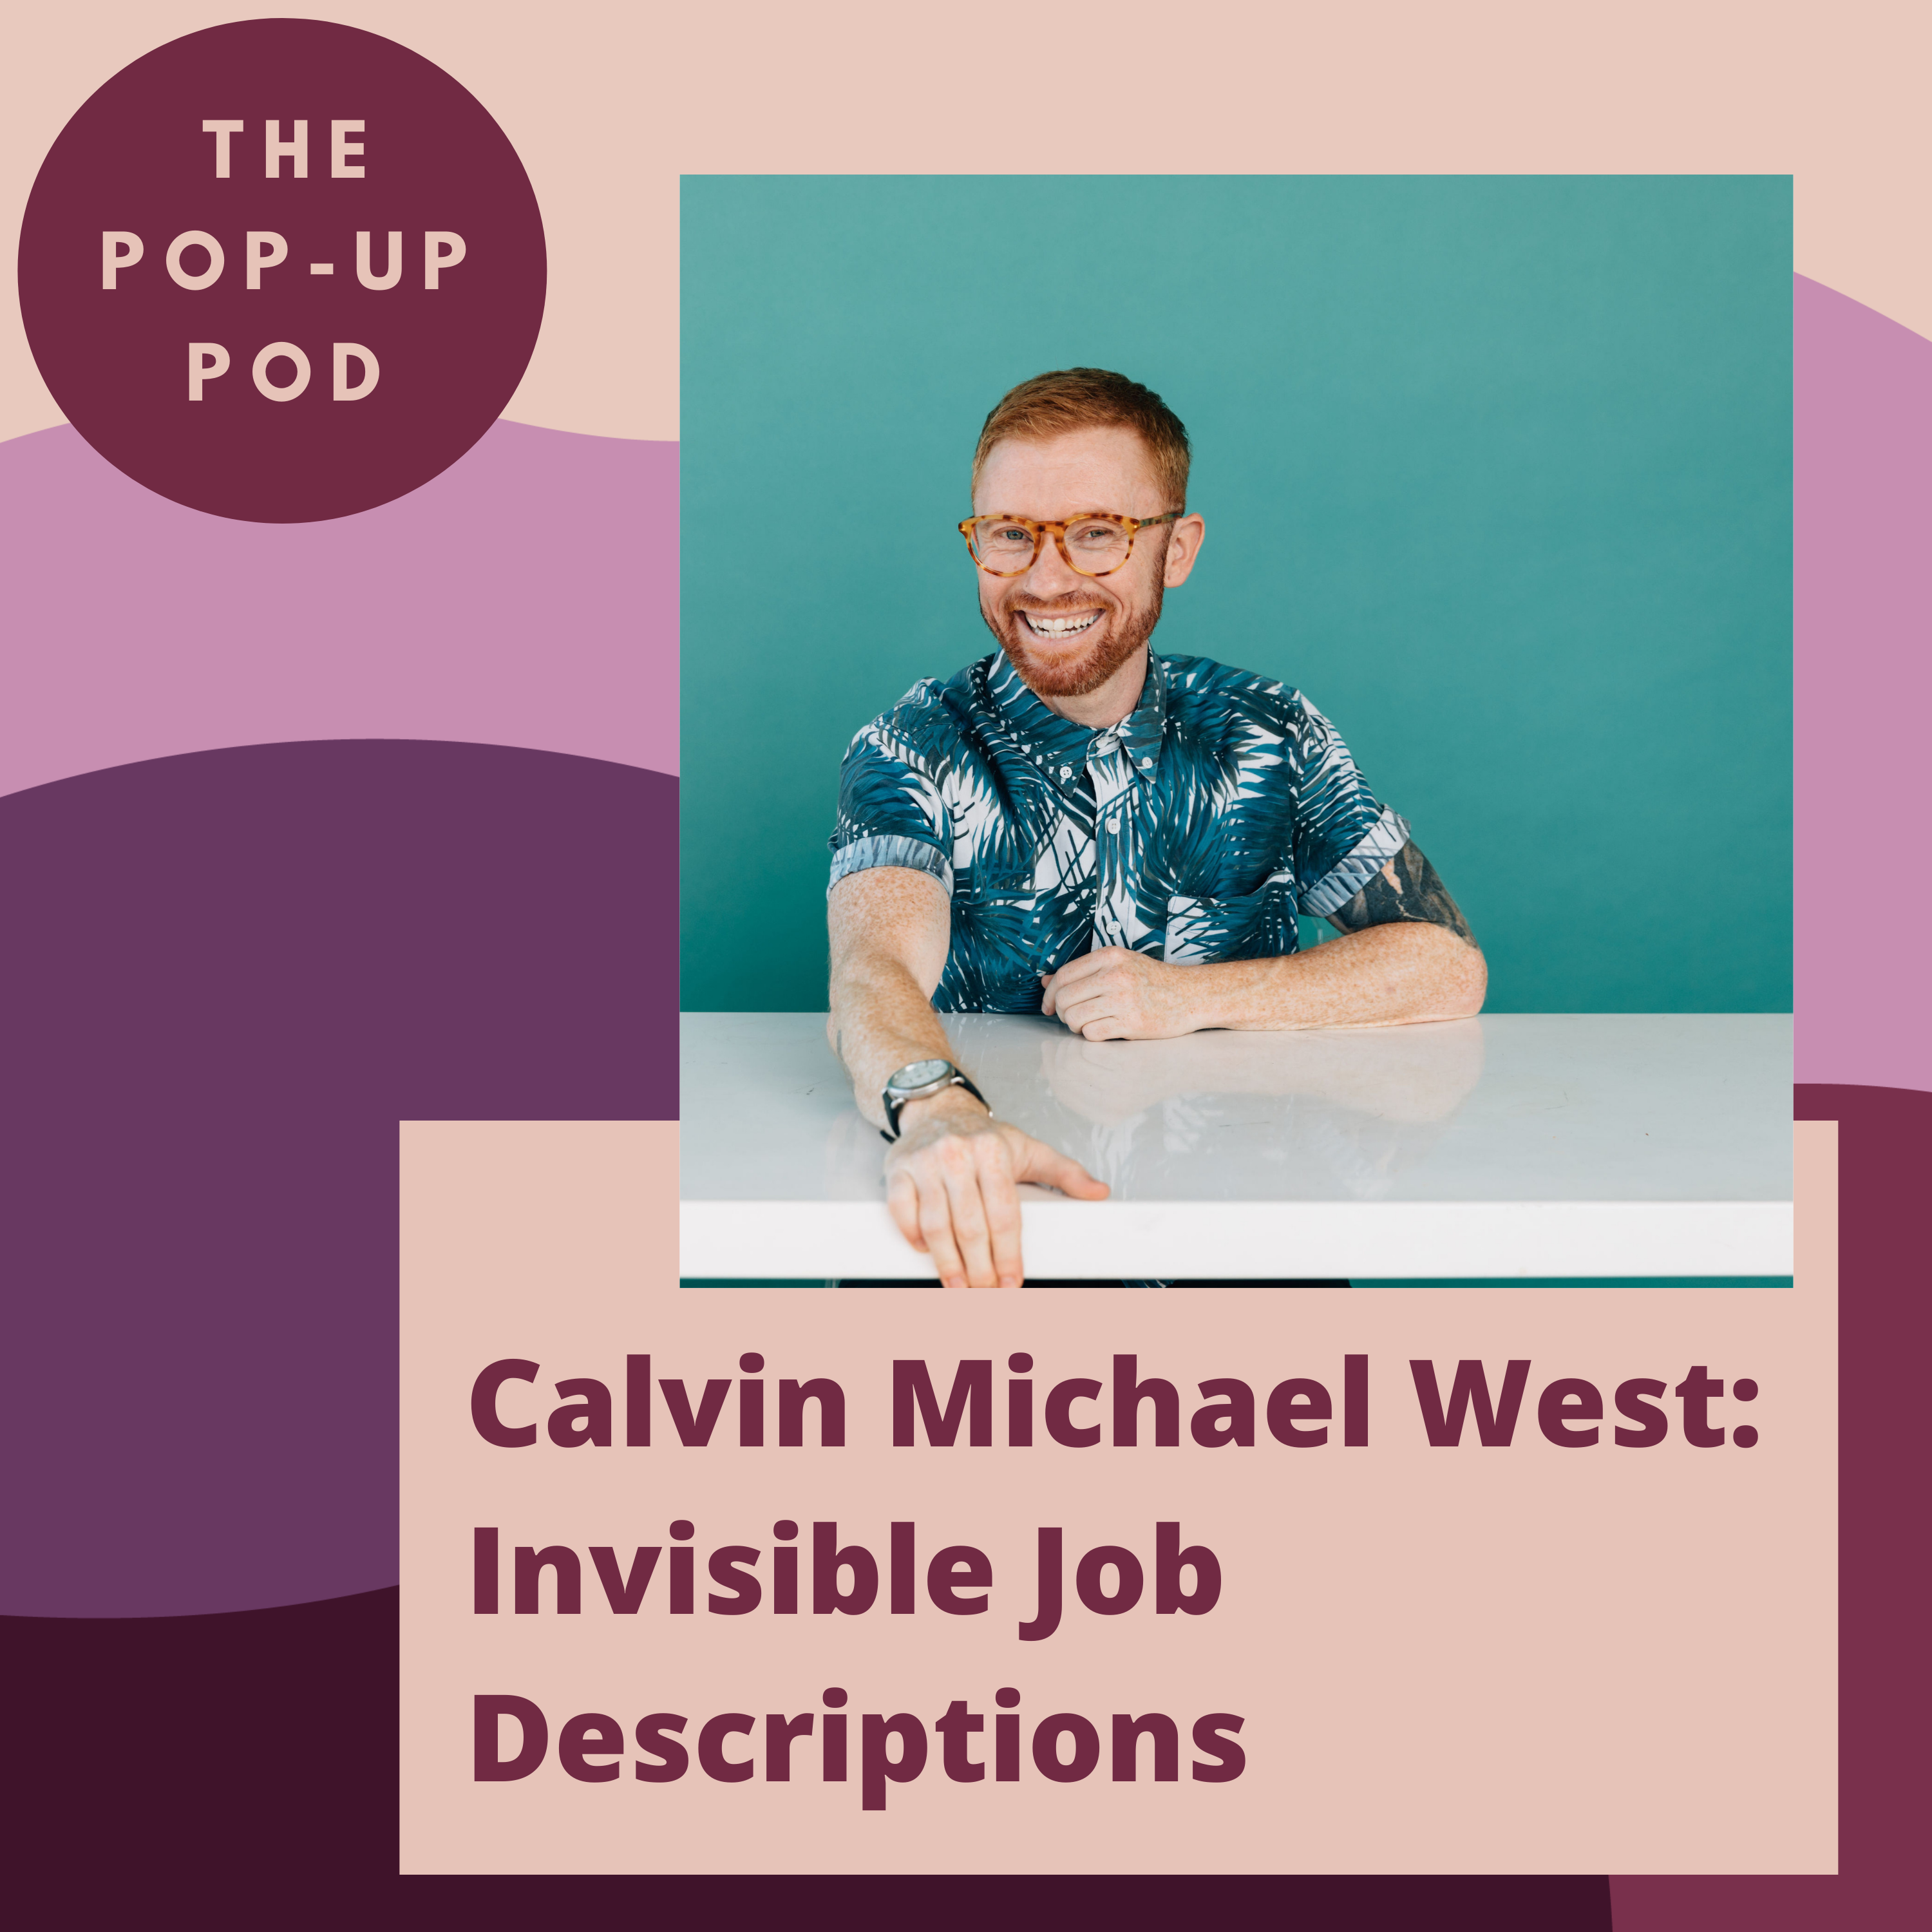 Calvin Michael West: Invisible Job Descriptions